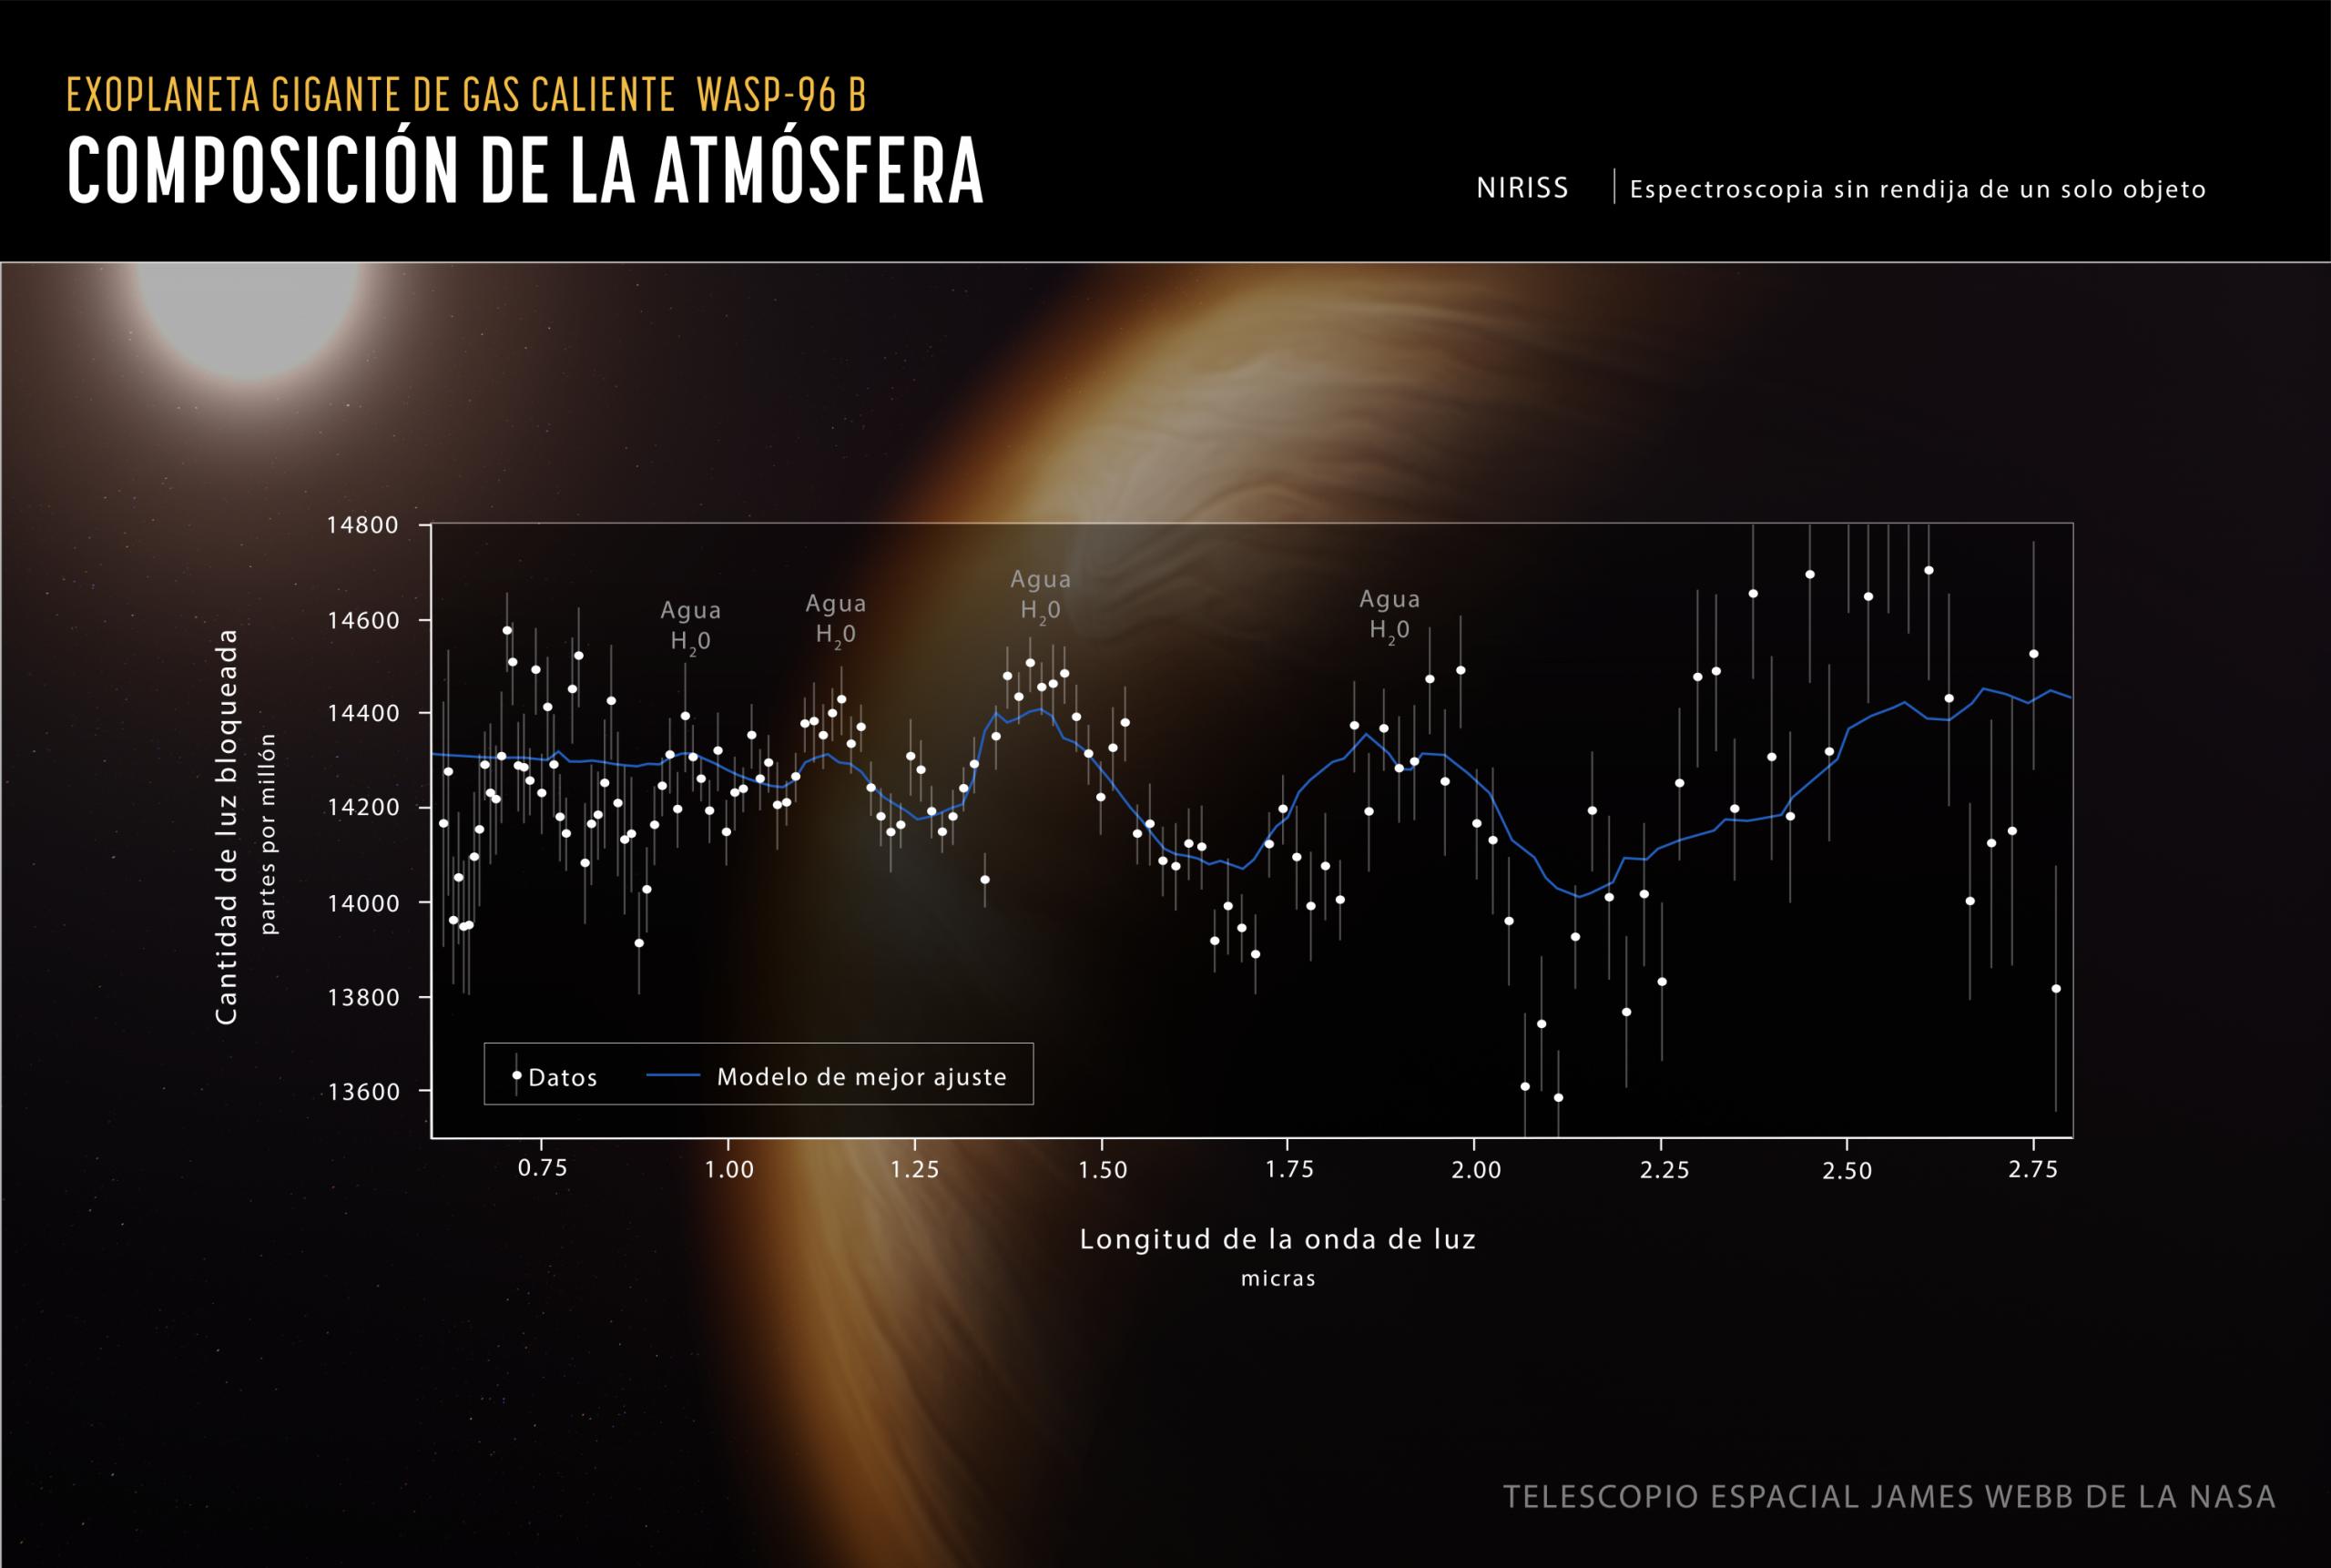 James Webb confirma la existencia de agua en la atmósfera de un exoplaneta